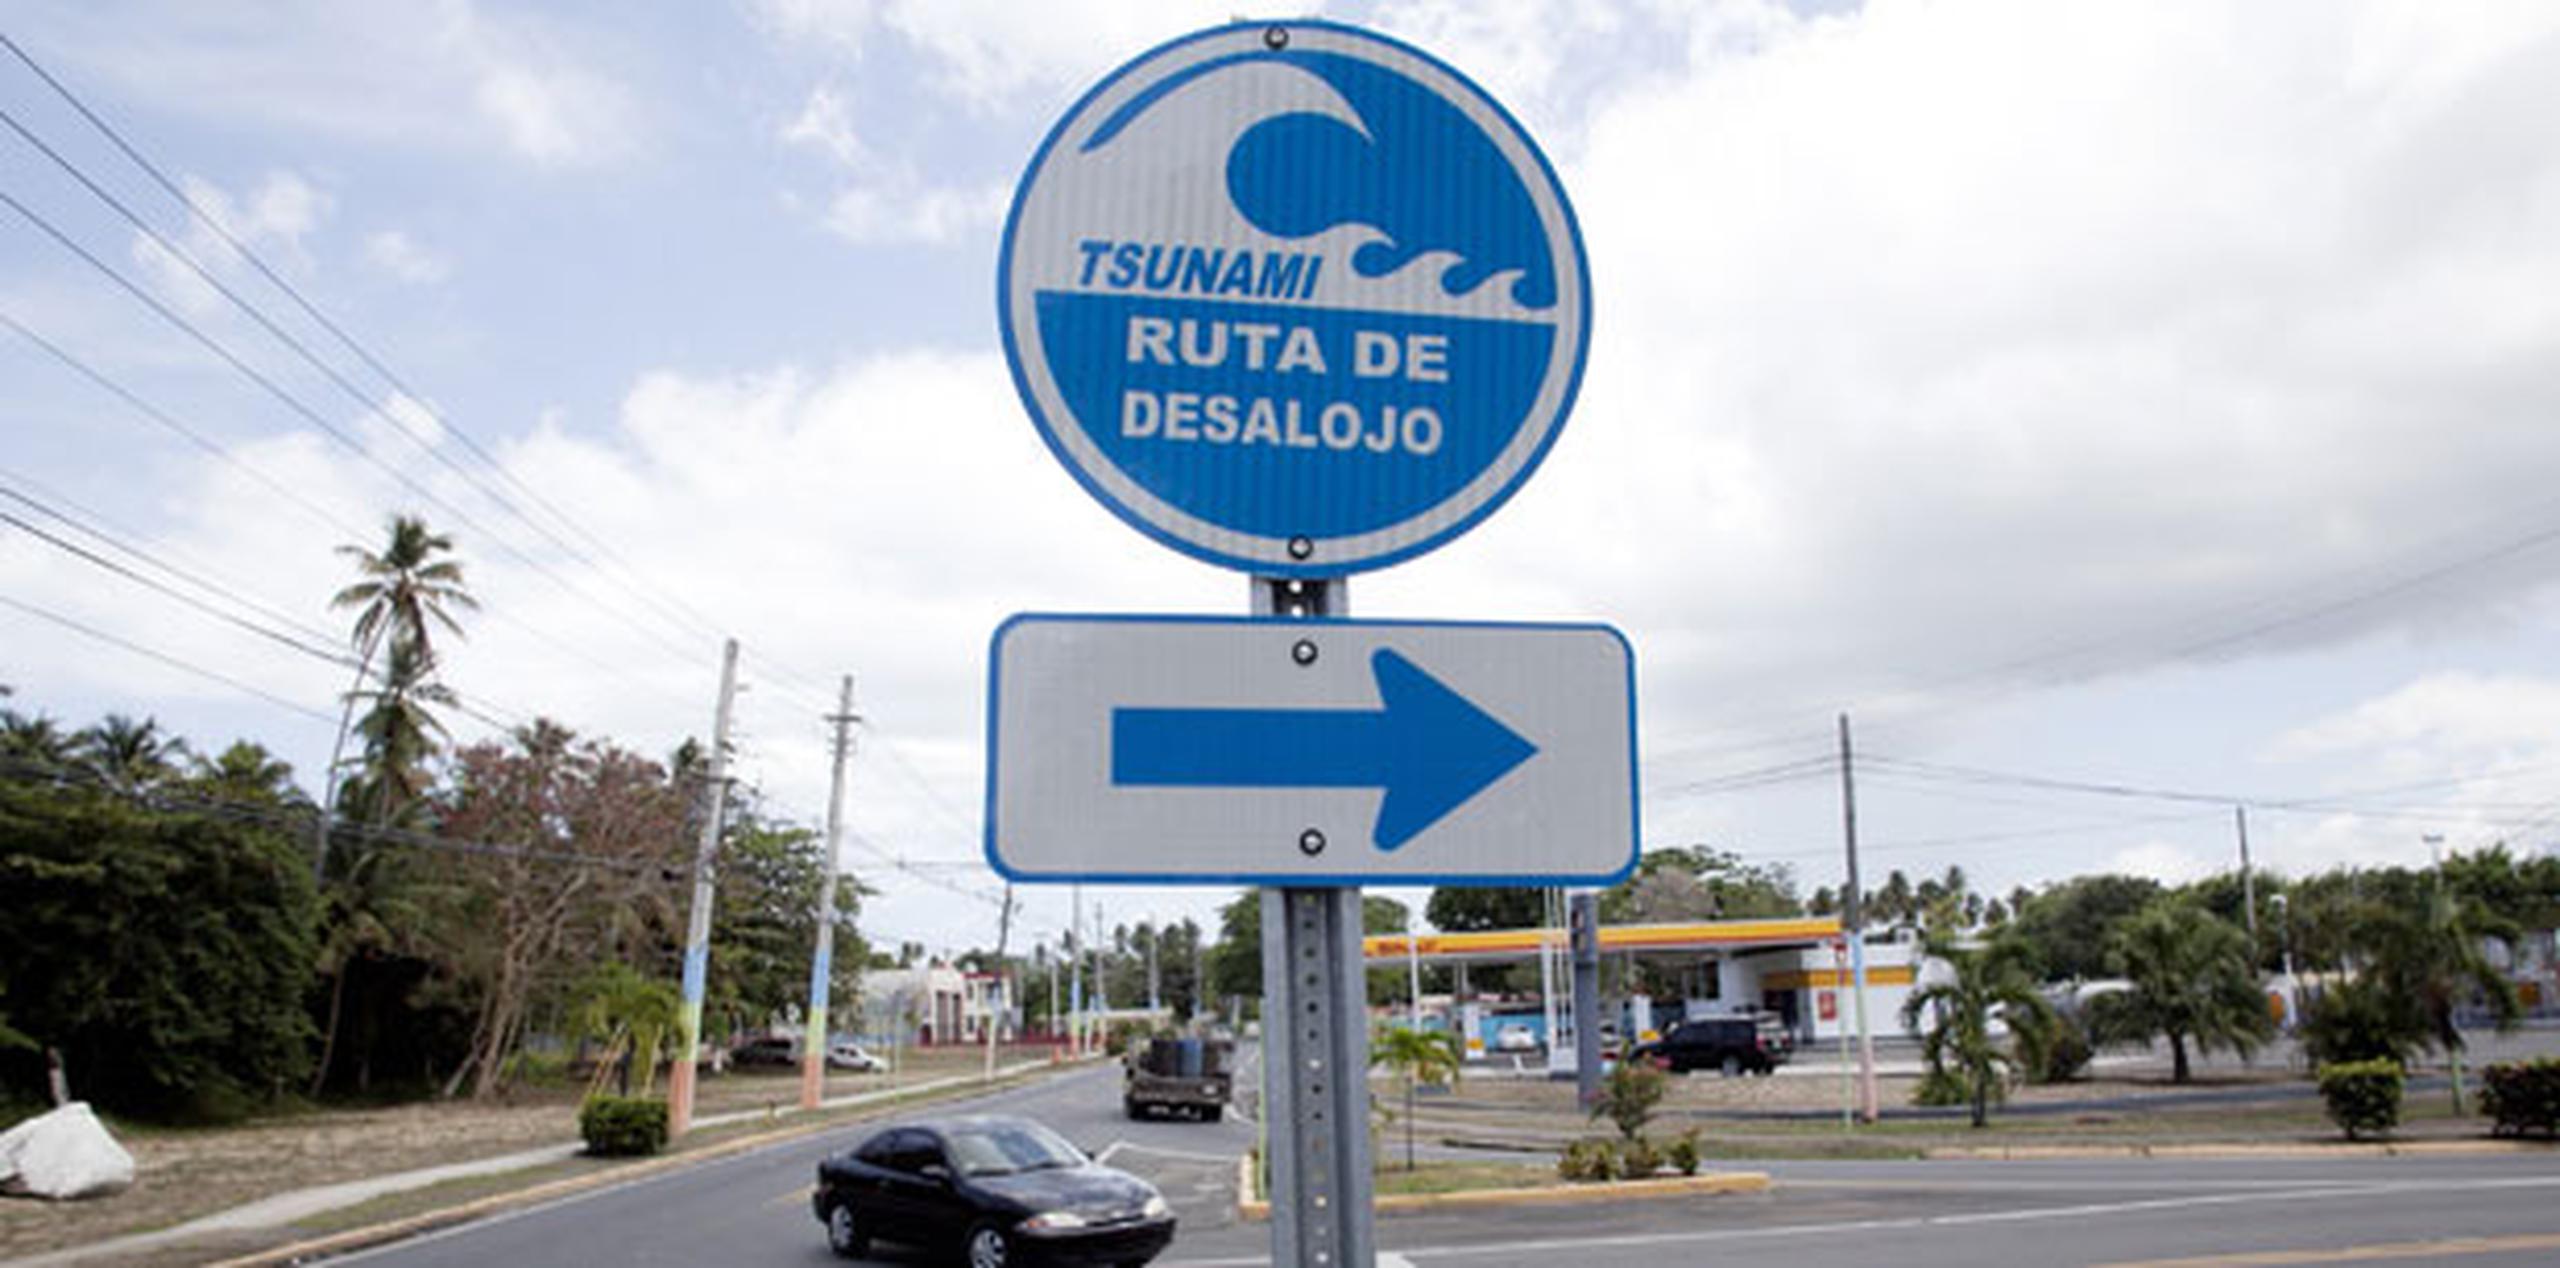 En el primer día del ejercicio, hoy lunes, simularon que Puerto Rico sufrió un supuesto terremoto de magnitud 8.6, seguido por un tsunami. (Archivo)